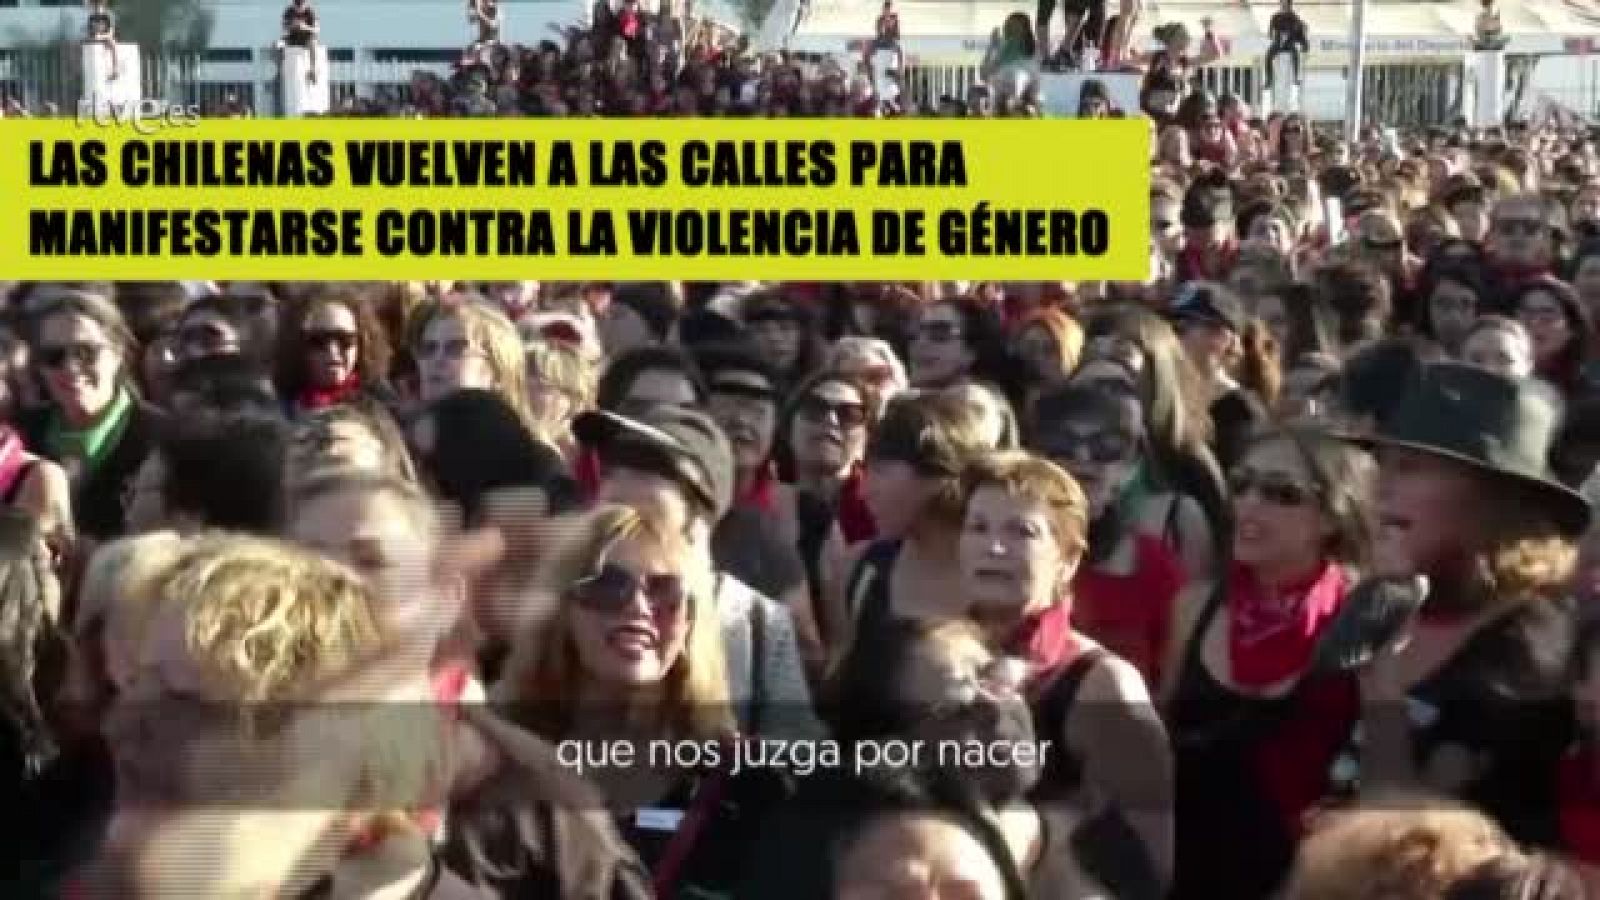 Las chilenas vuelven a la calle para manifestarse contra la violencia de género